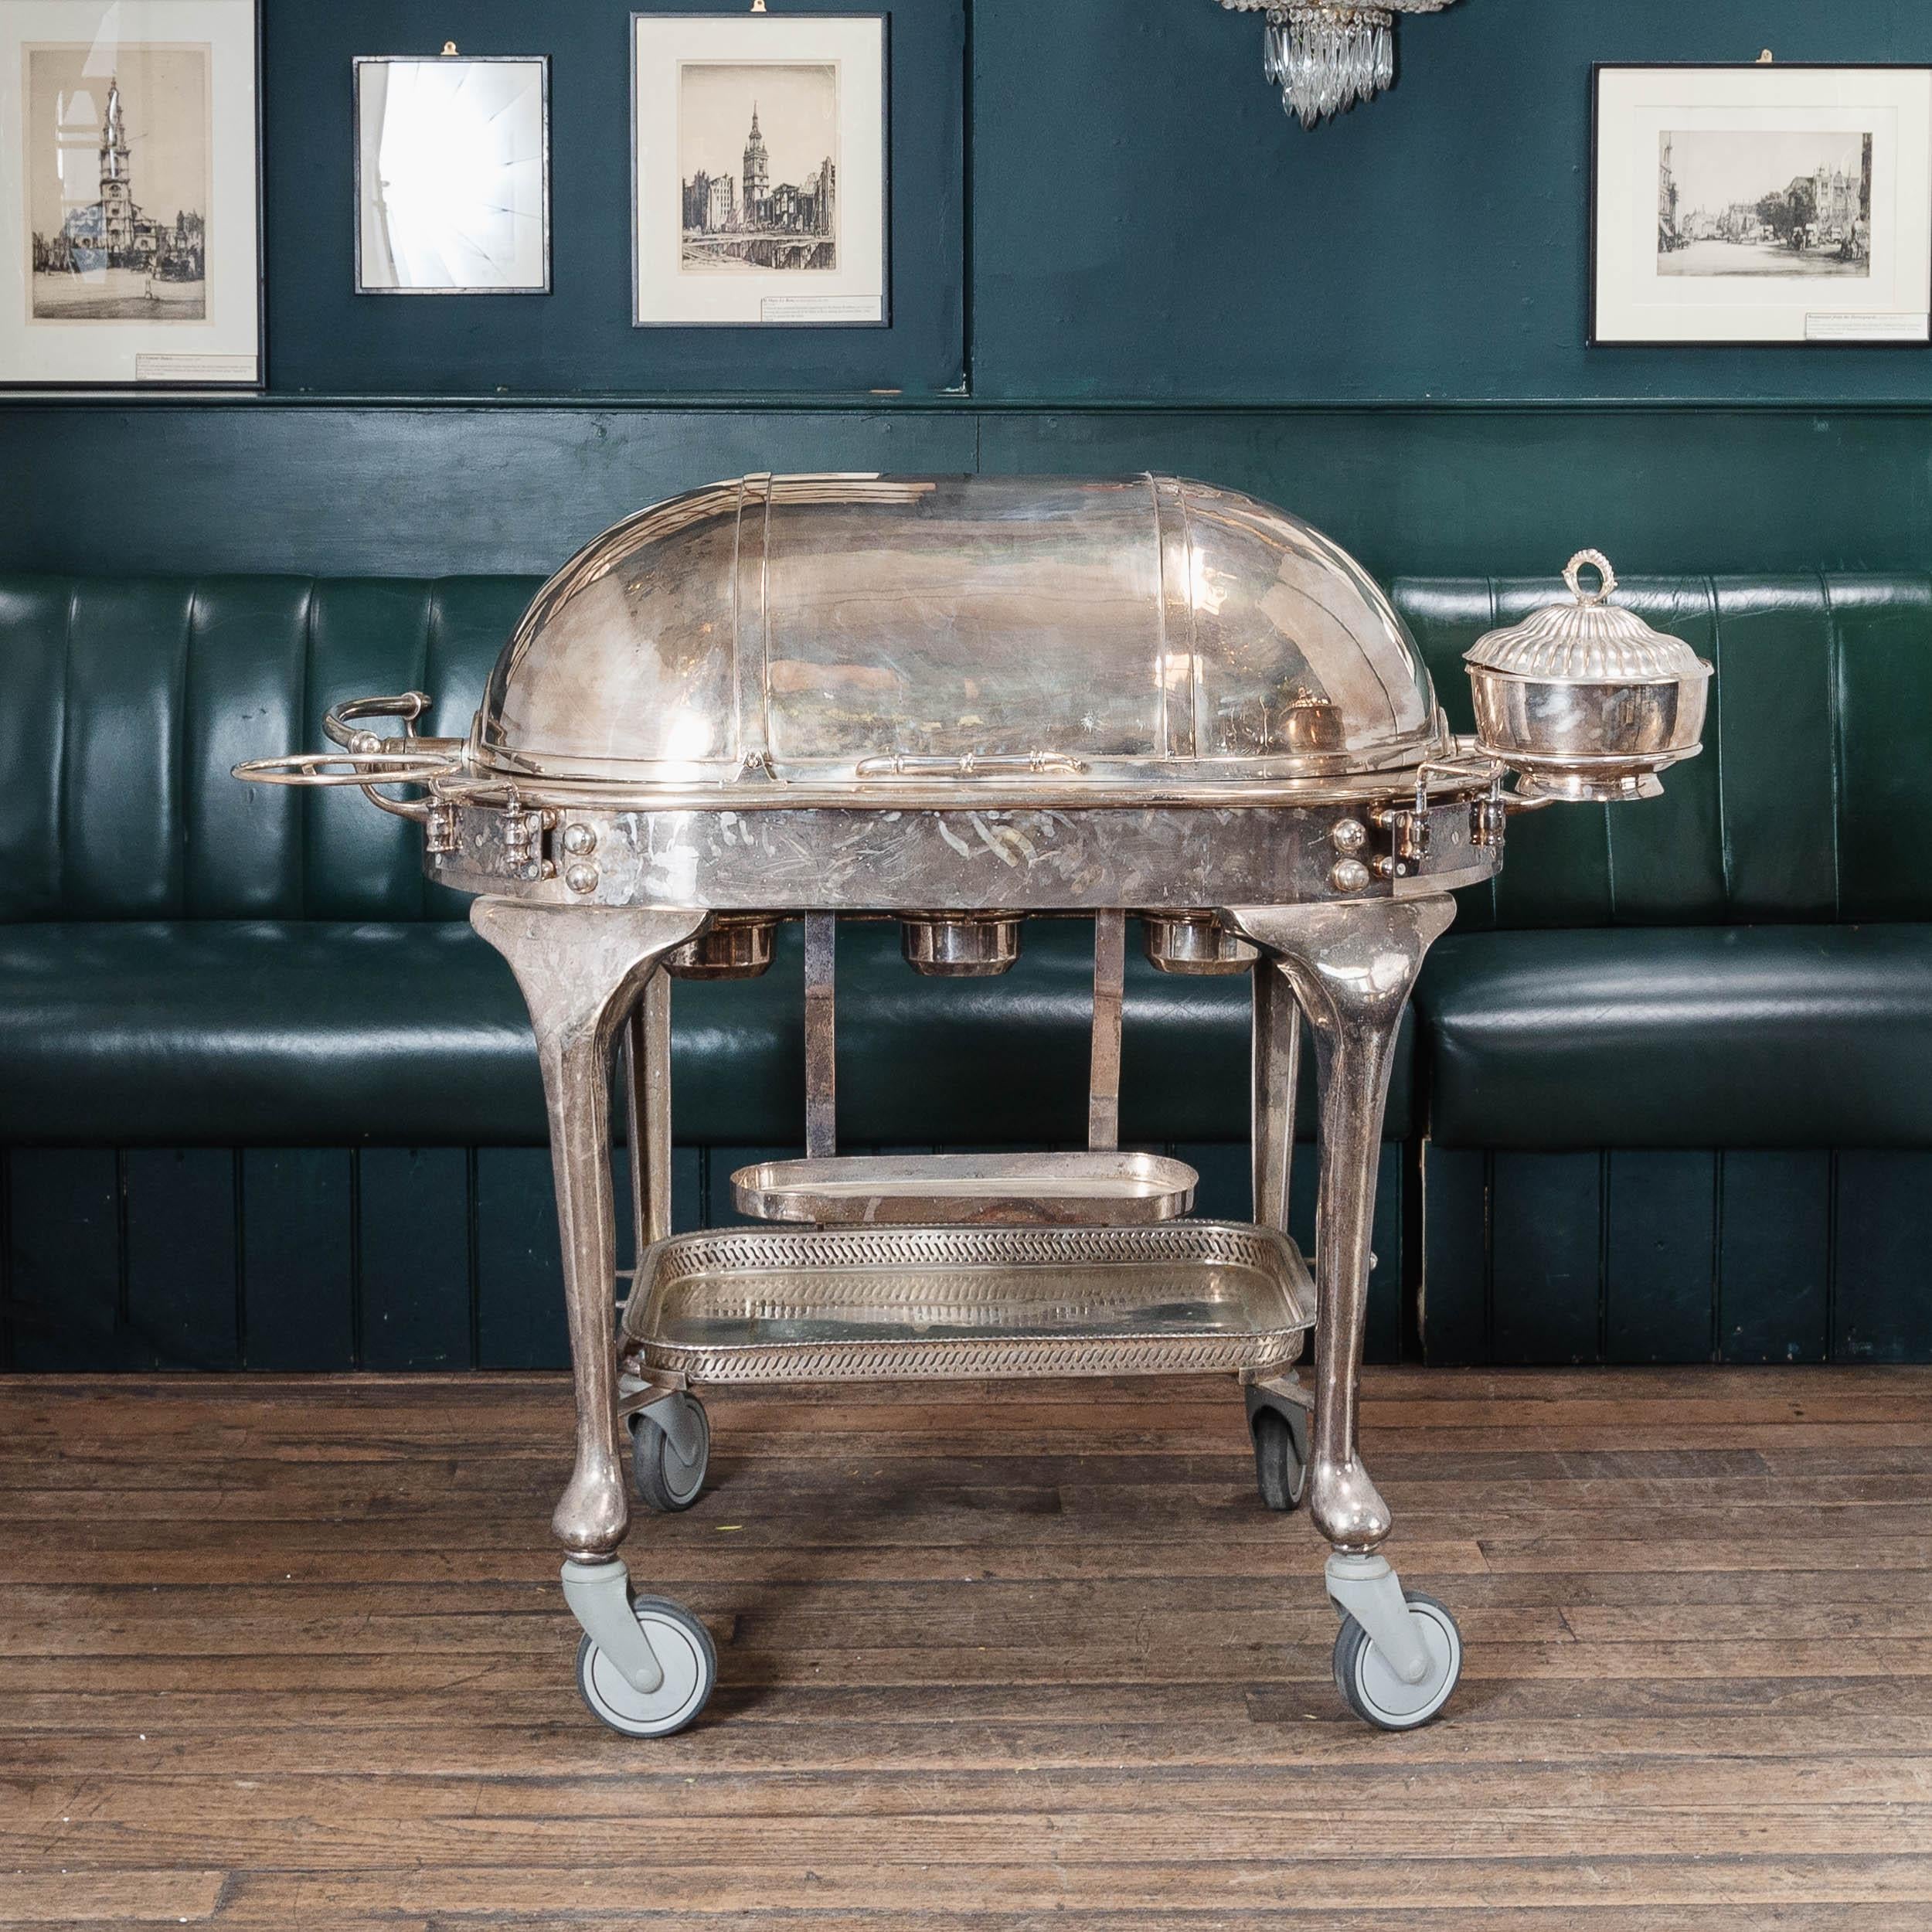 Grand chariot à viande en métal argenté du début du XXe siècle, portant le poinçon de James Deakin & Sons Ltd de Sheffield, le couvercle à enroulement s'ouvrant pour révéler une planche à découper et trois récipients à sauce,  avec trois brûleurs à